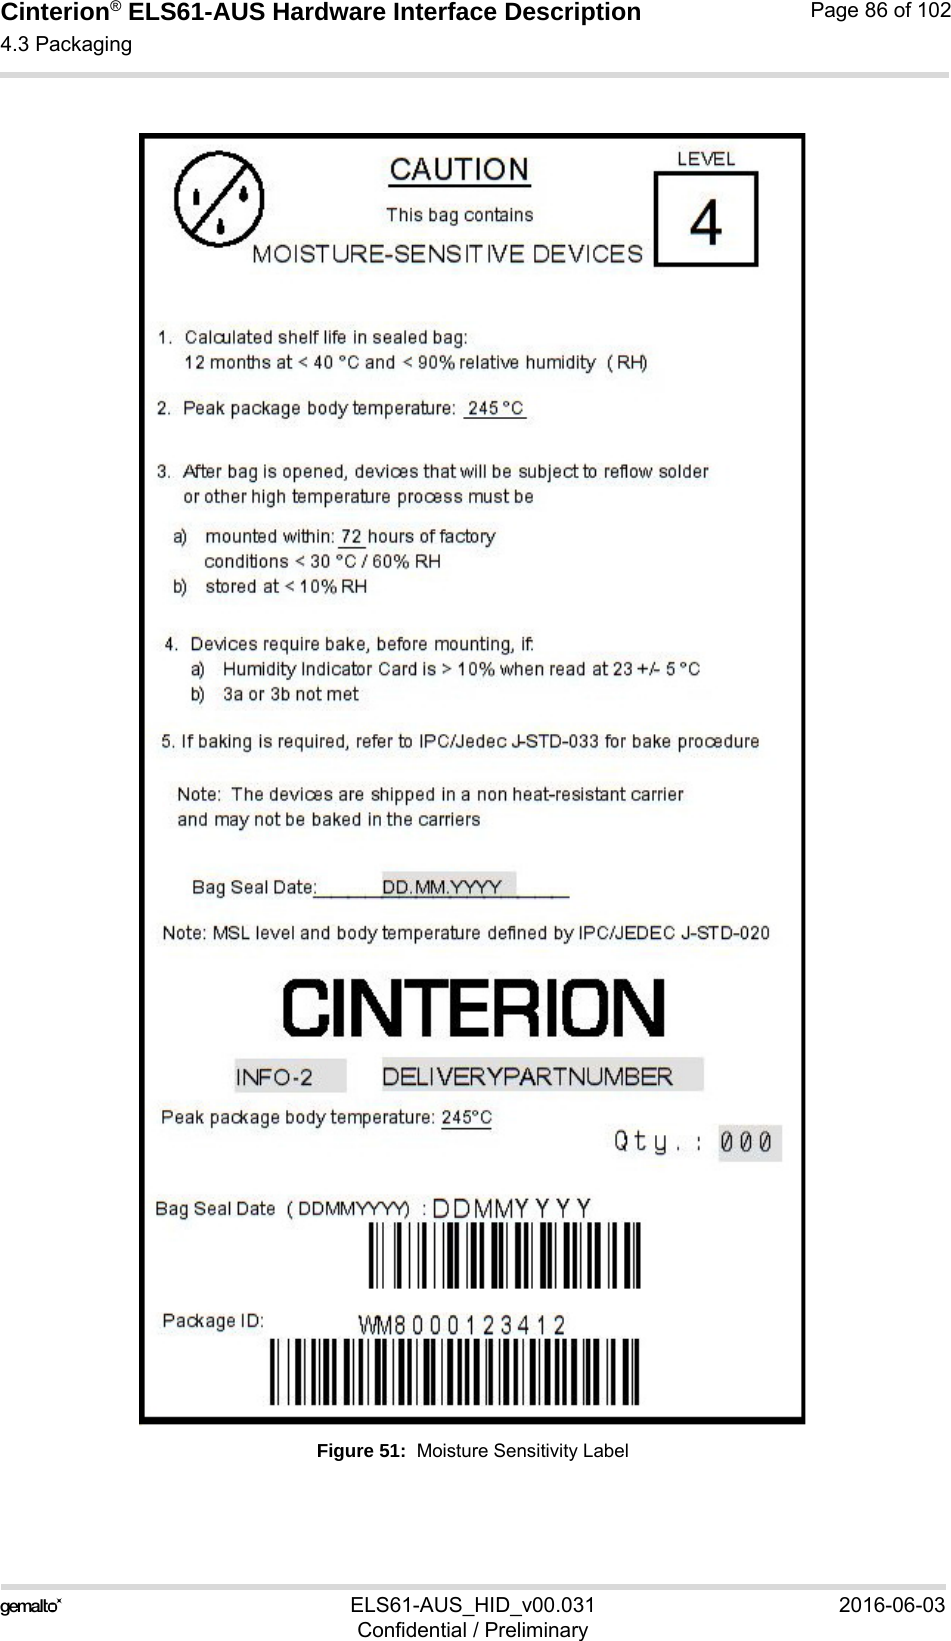 Cinterion® ELS61-AUS Hardware Interface Description4.3 Packaging88ELS61-AUS_HID_v00.031 2016-06-03Confidential / PreliminaryPage 86 of 102Figure 51:  Moisture Sensitivity Label